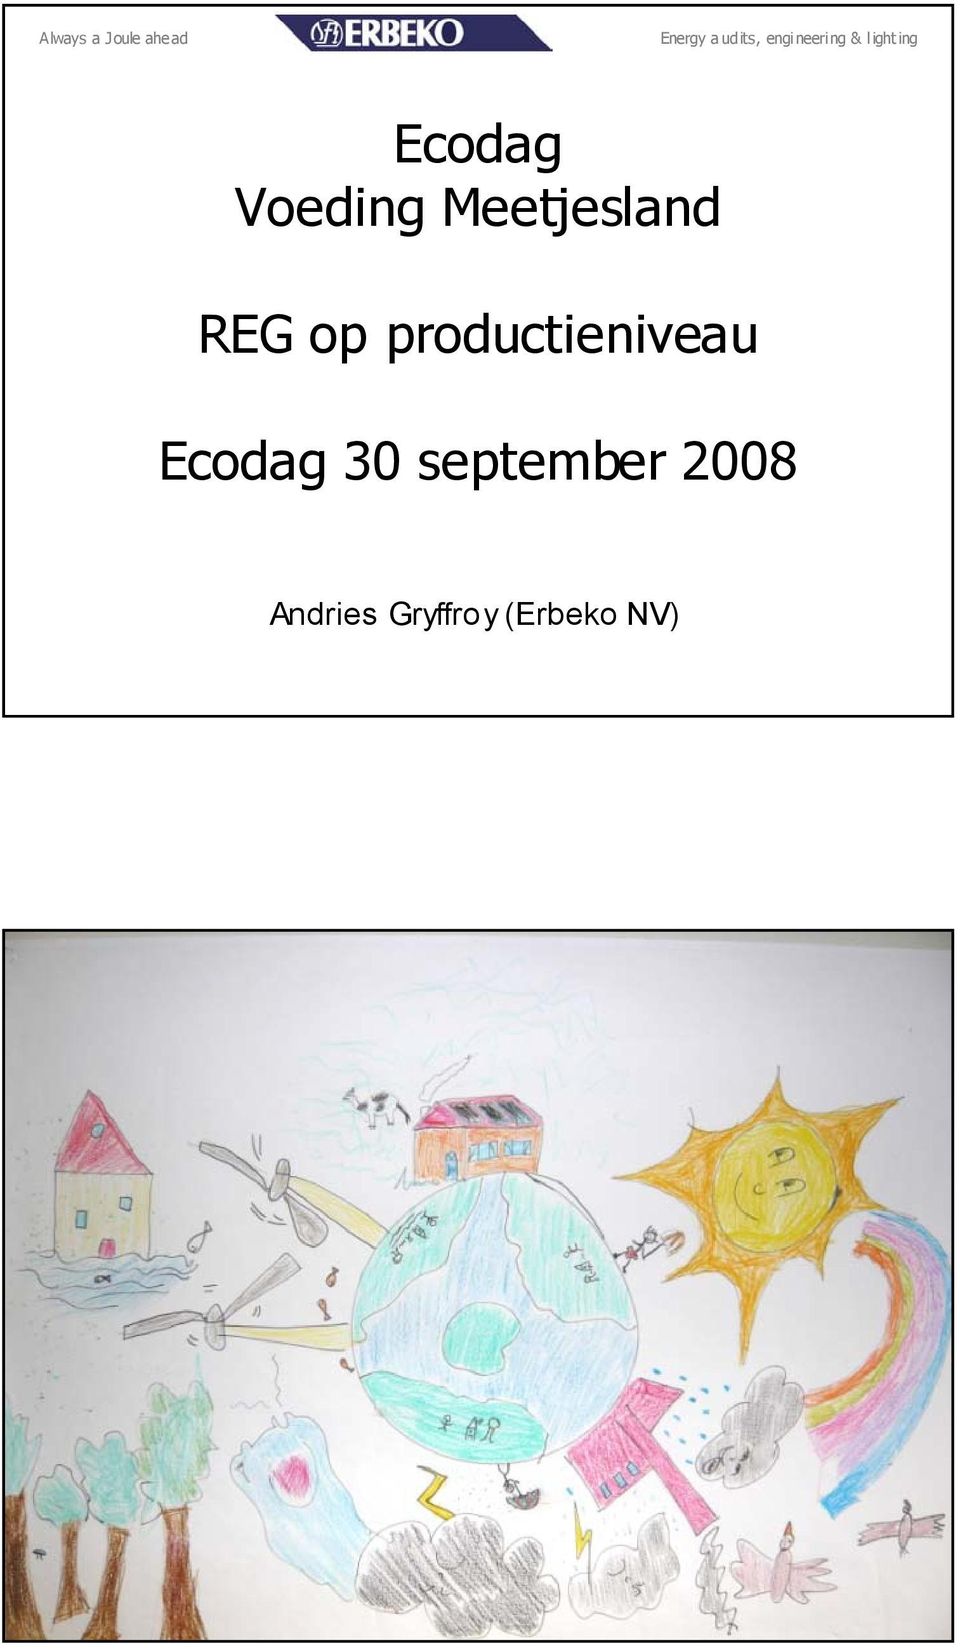 2008 Andries Gryffroy (Erbeko NV)